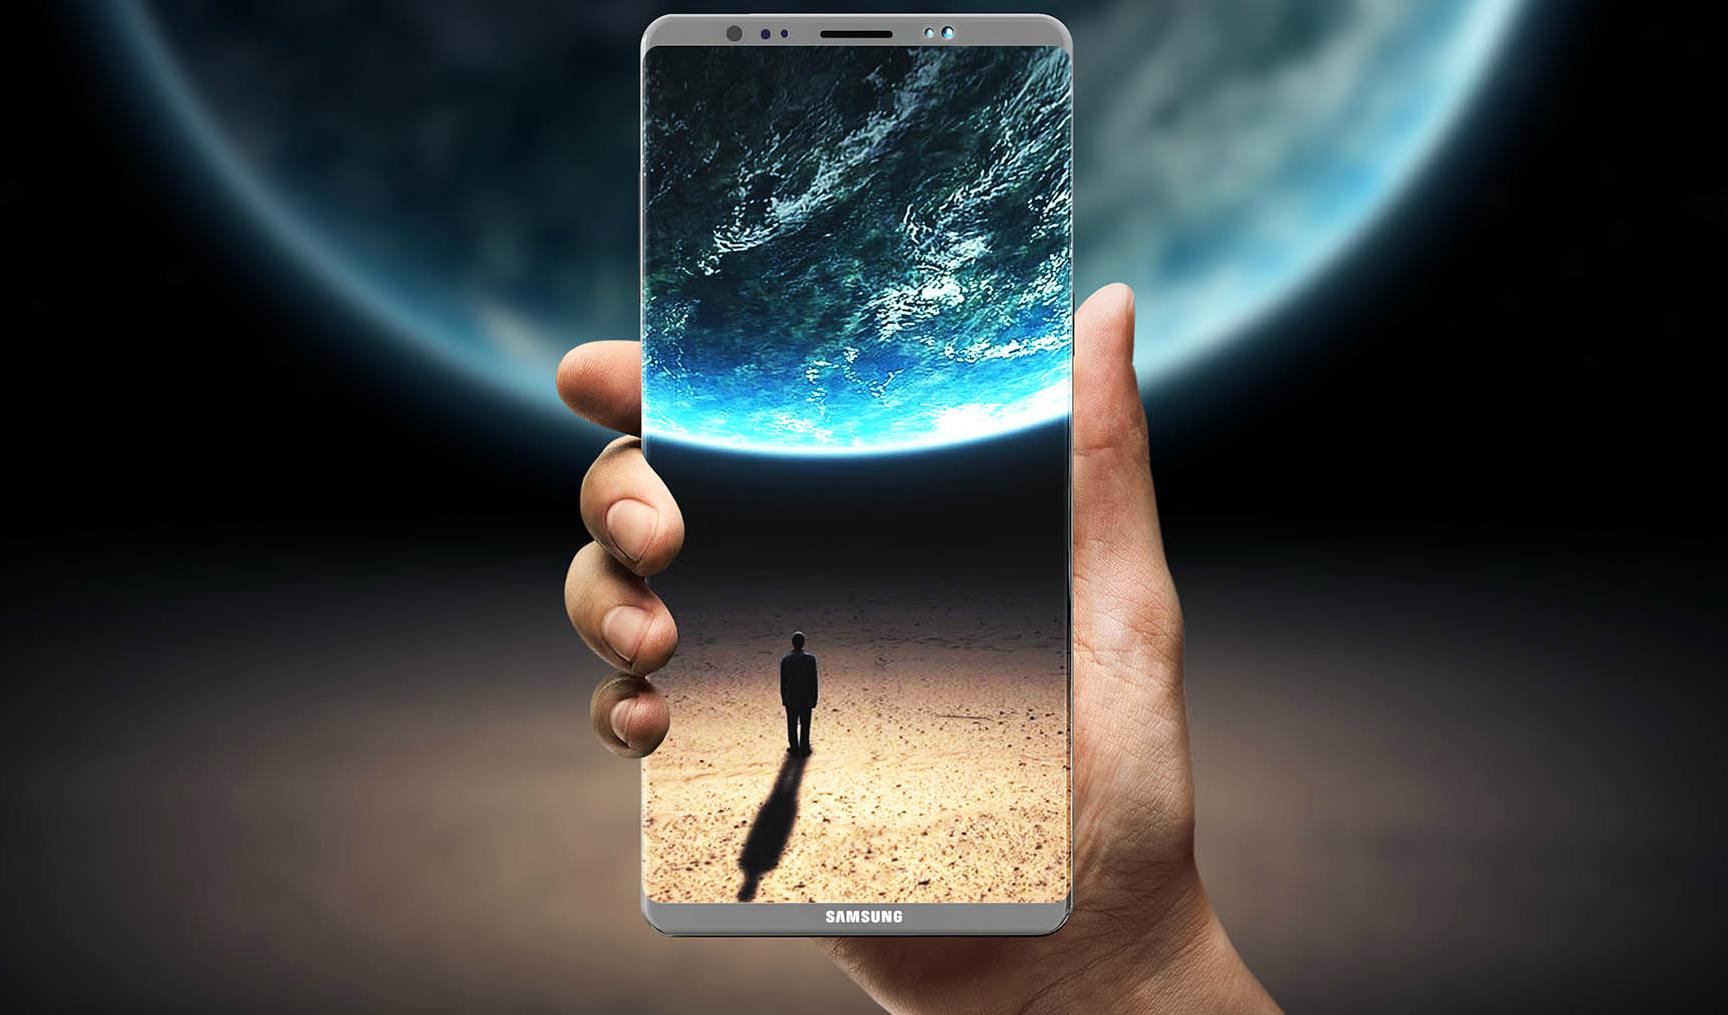 El próximo proyecto de la firma generará energía mediante el movimiento para la batería del Samsung Galaxy S9